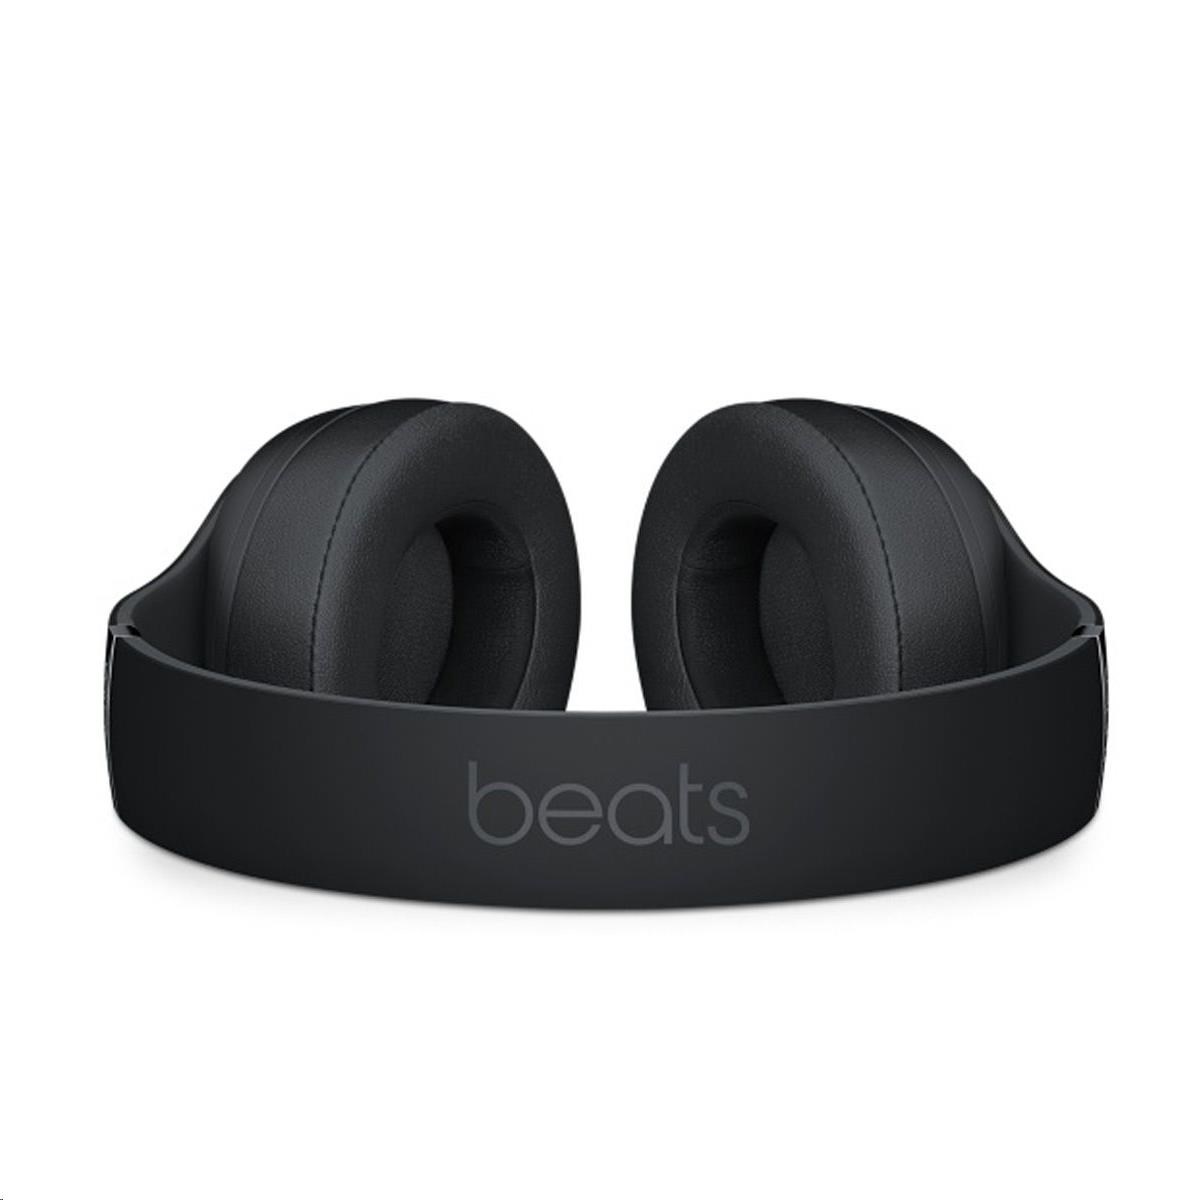 Beats Studio3 Wireless Over-Ear Headphones - Matte Black4 